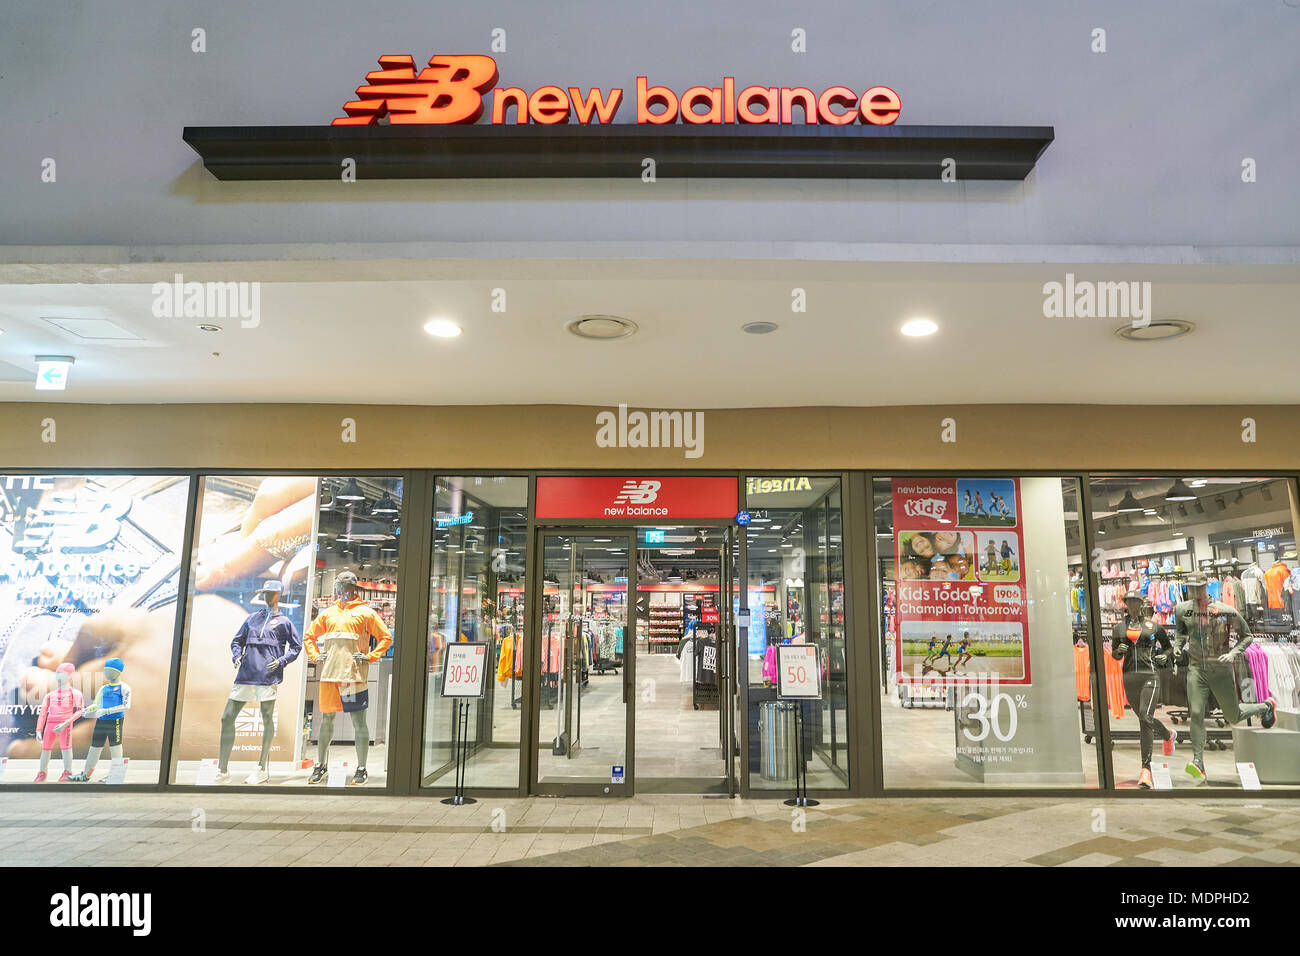 new balance mall